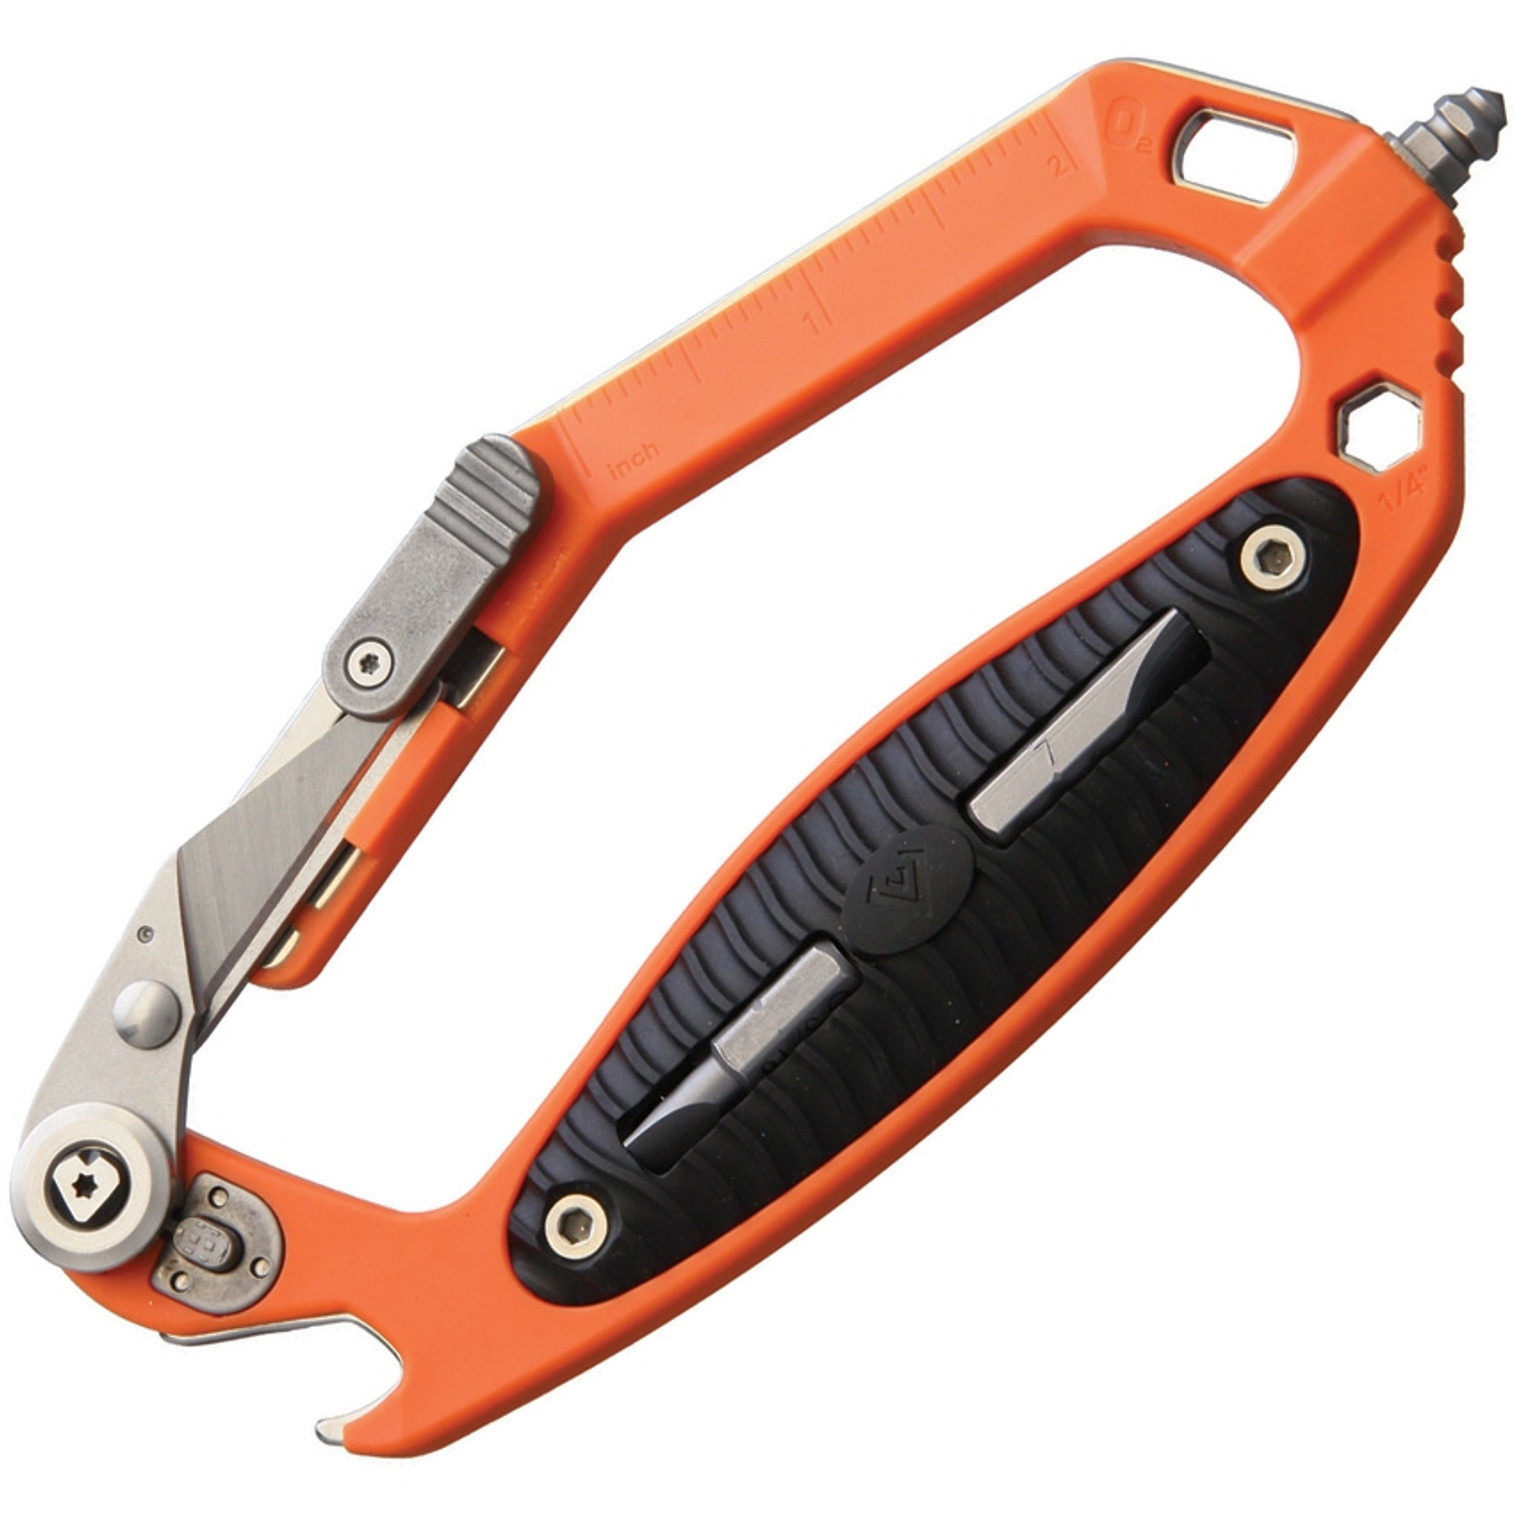 C.R.A.B. Multi Tool Orange